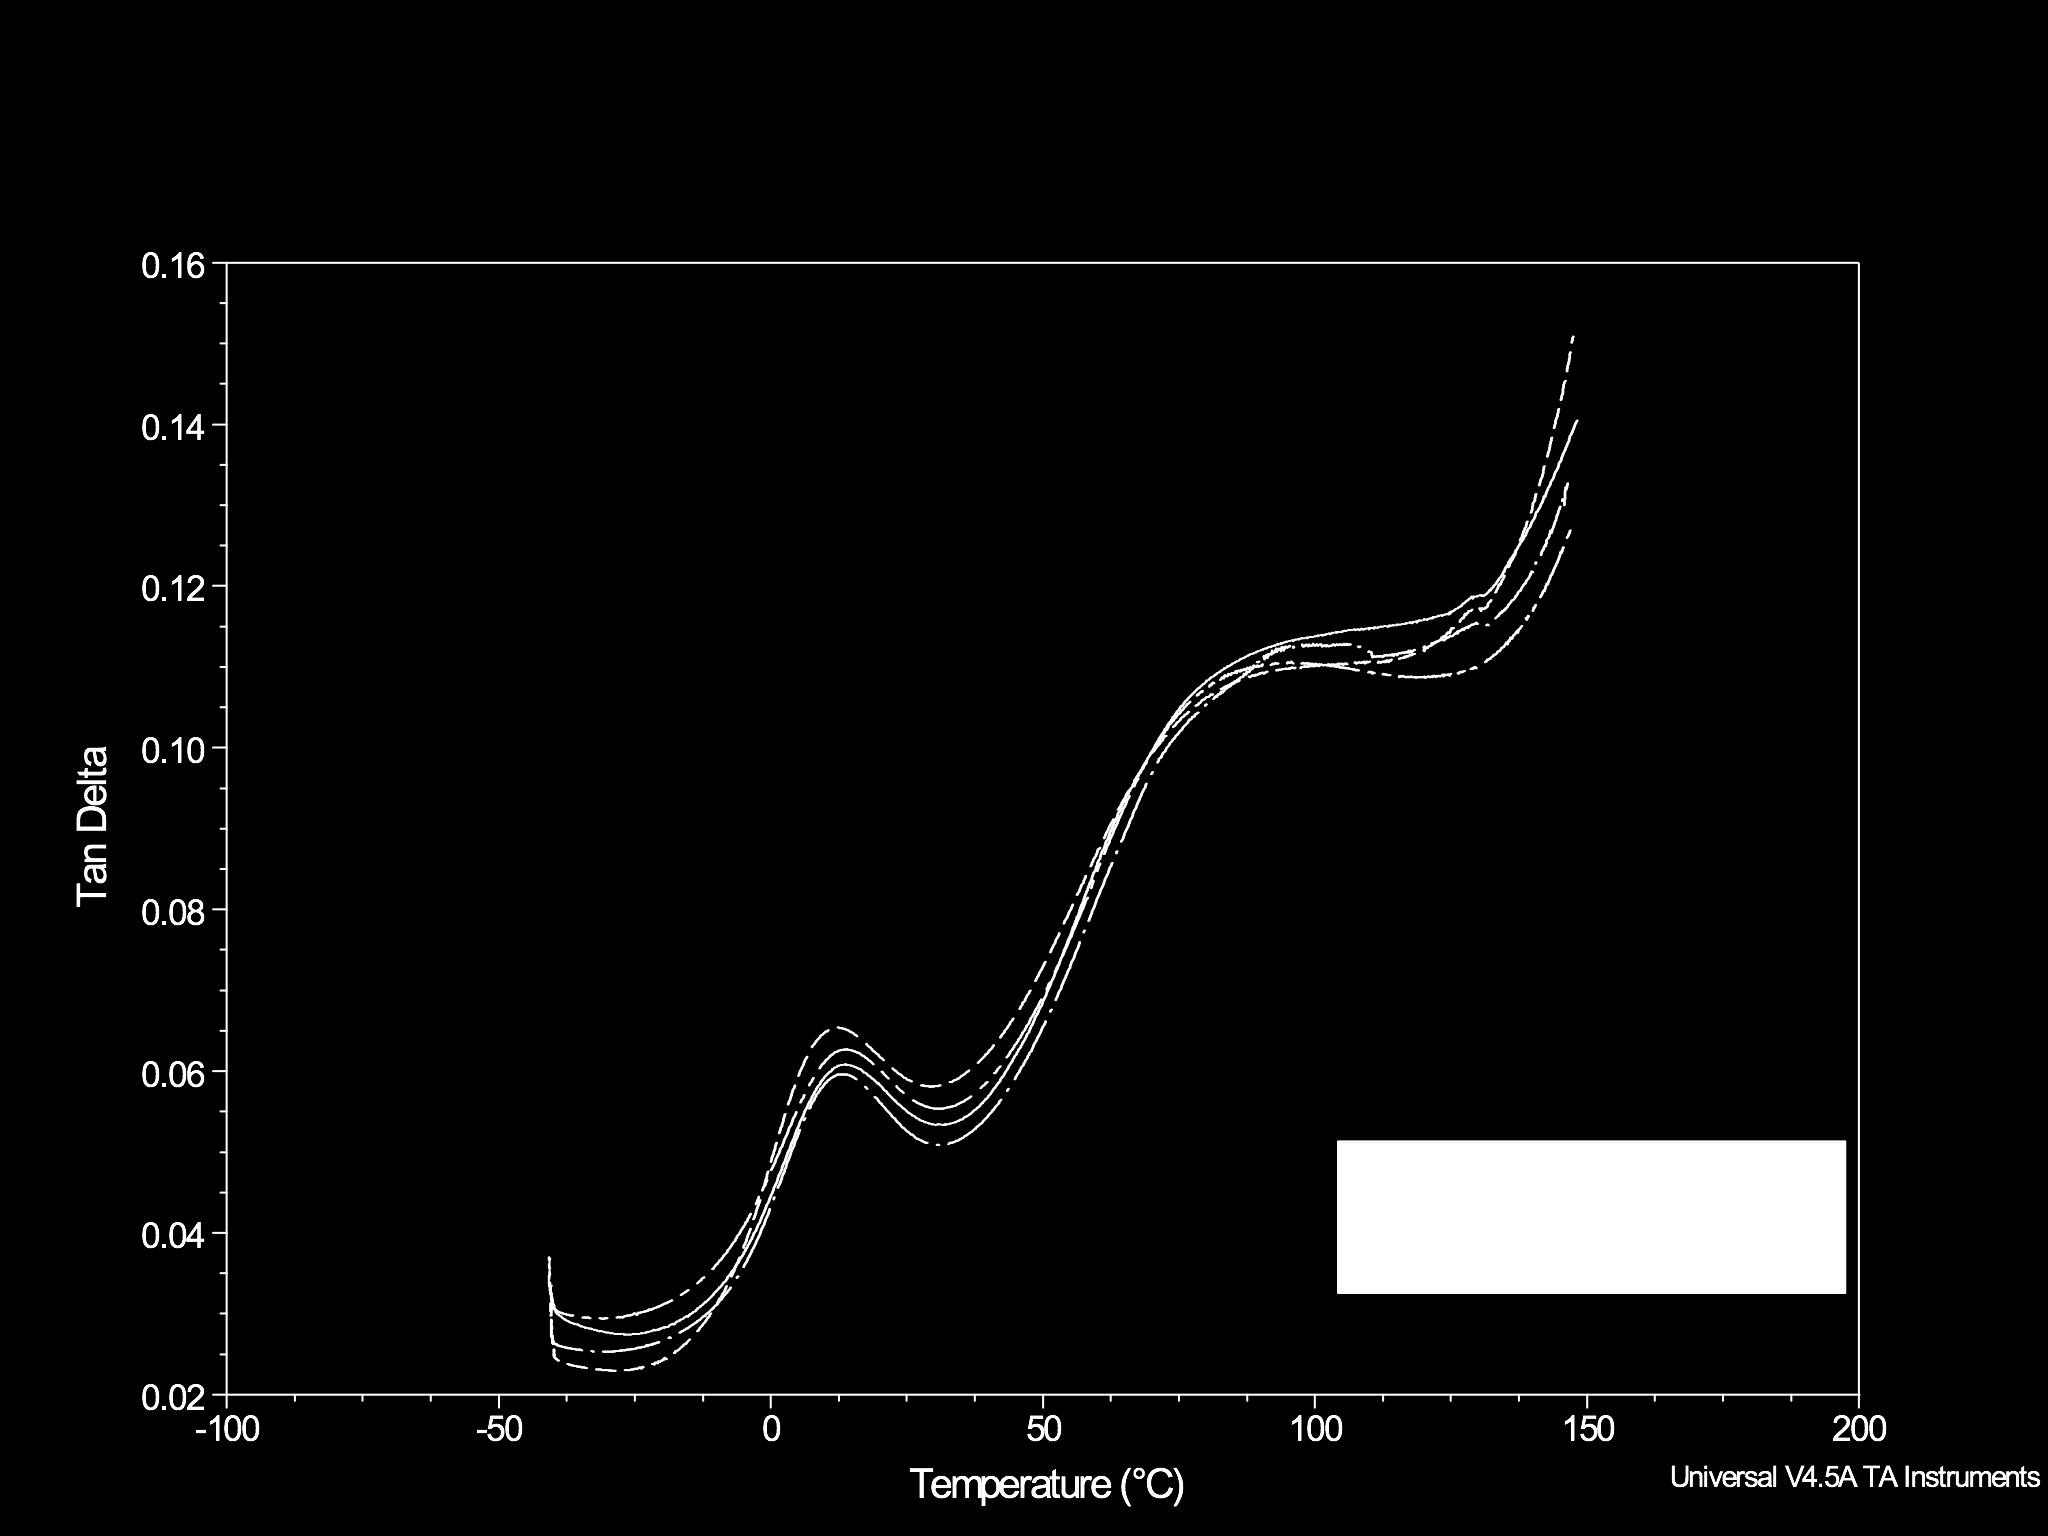 " IX Congresso Brasileiro de Análise Térmica e Calorimetria Figura 6 - Comparação das curvas tangente delta (tan δ) em função da temperatura para compósitos PP reciclado com diferentes teores de